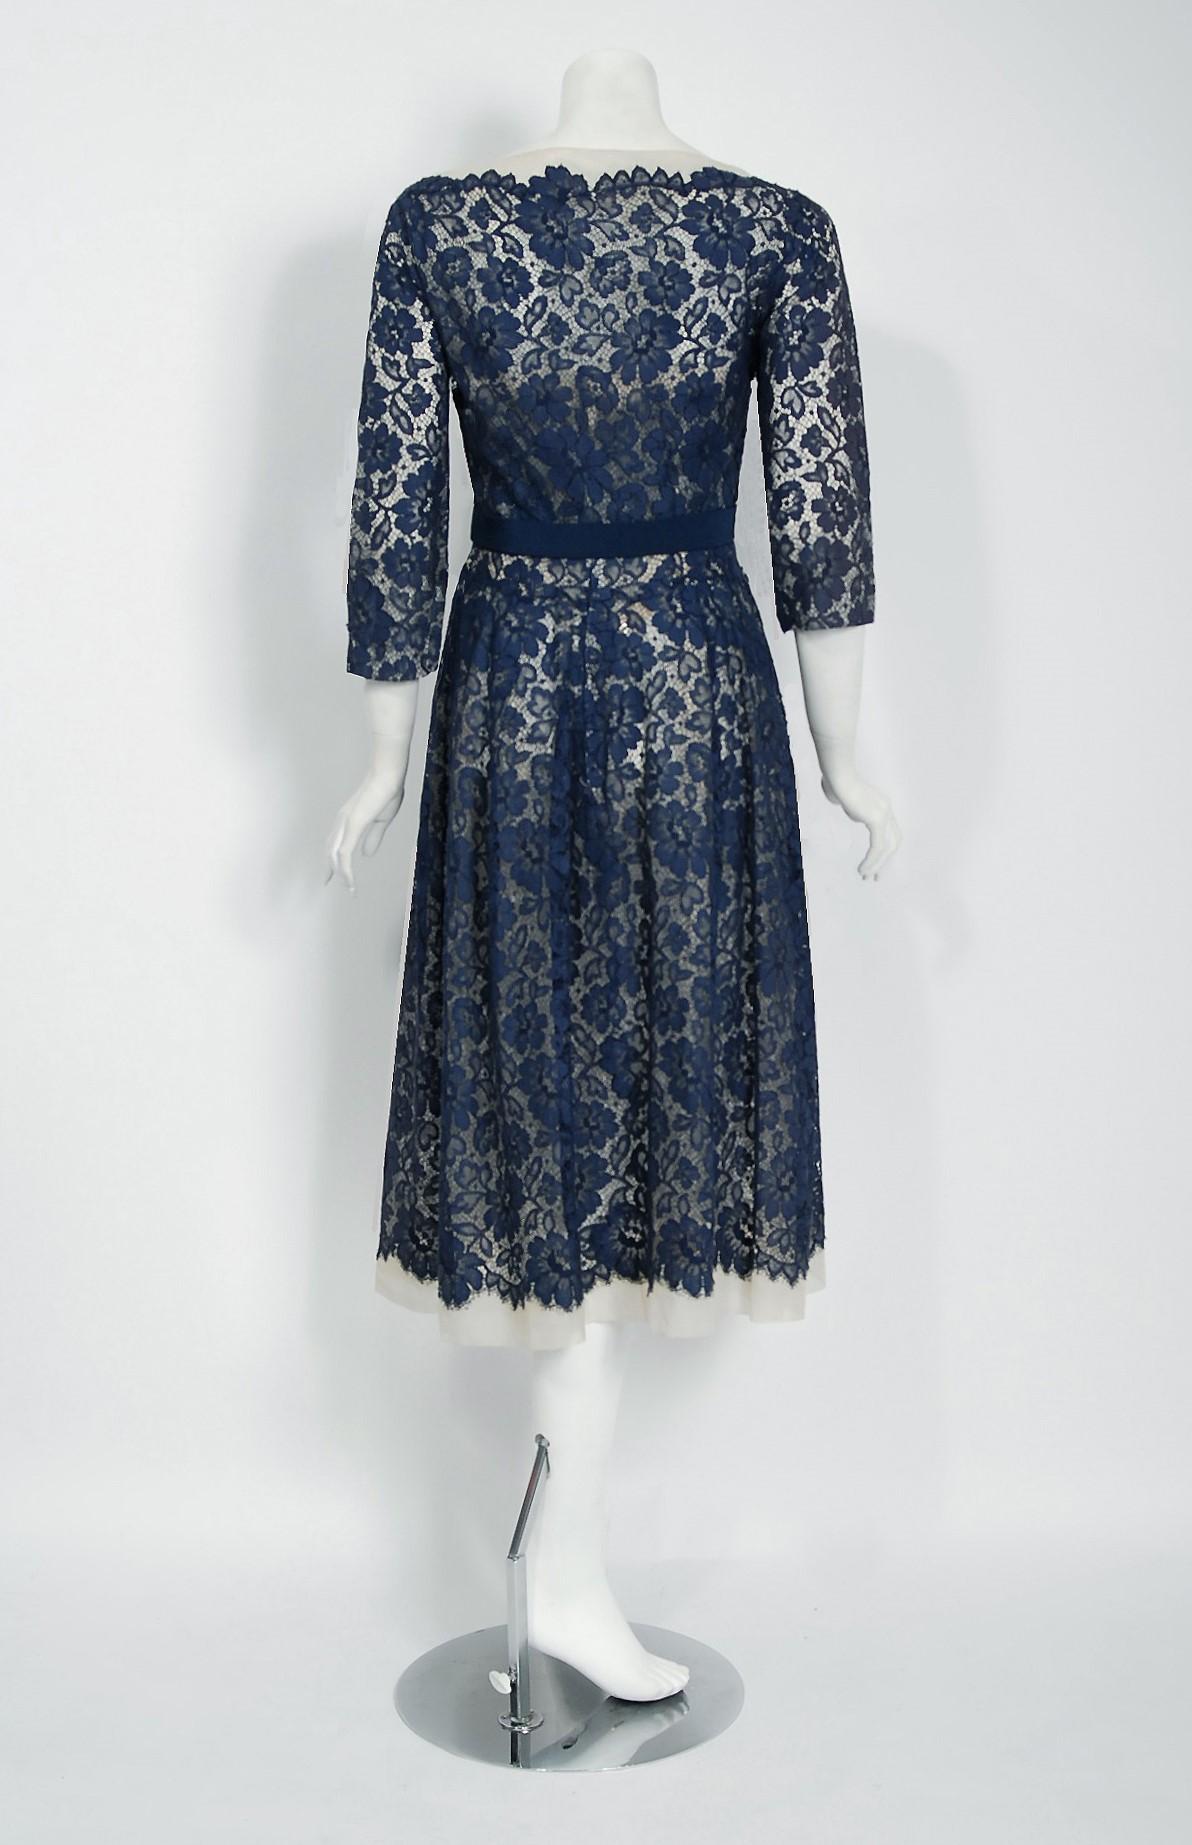 Purple Vintage 1950s Pierre Balmain Couture Navy Lace Illusion Strapless Dress & Jacket For Sale